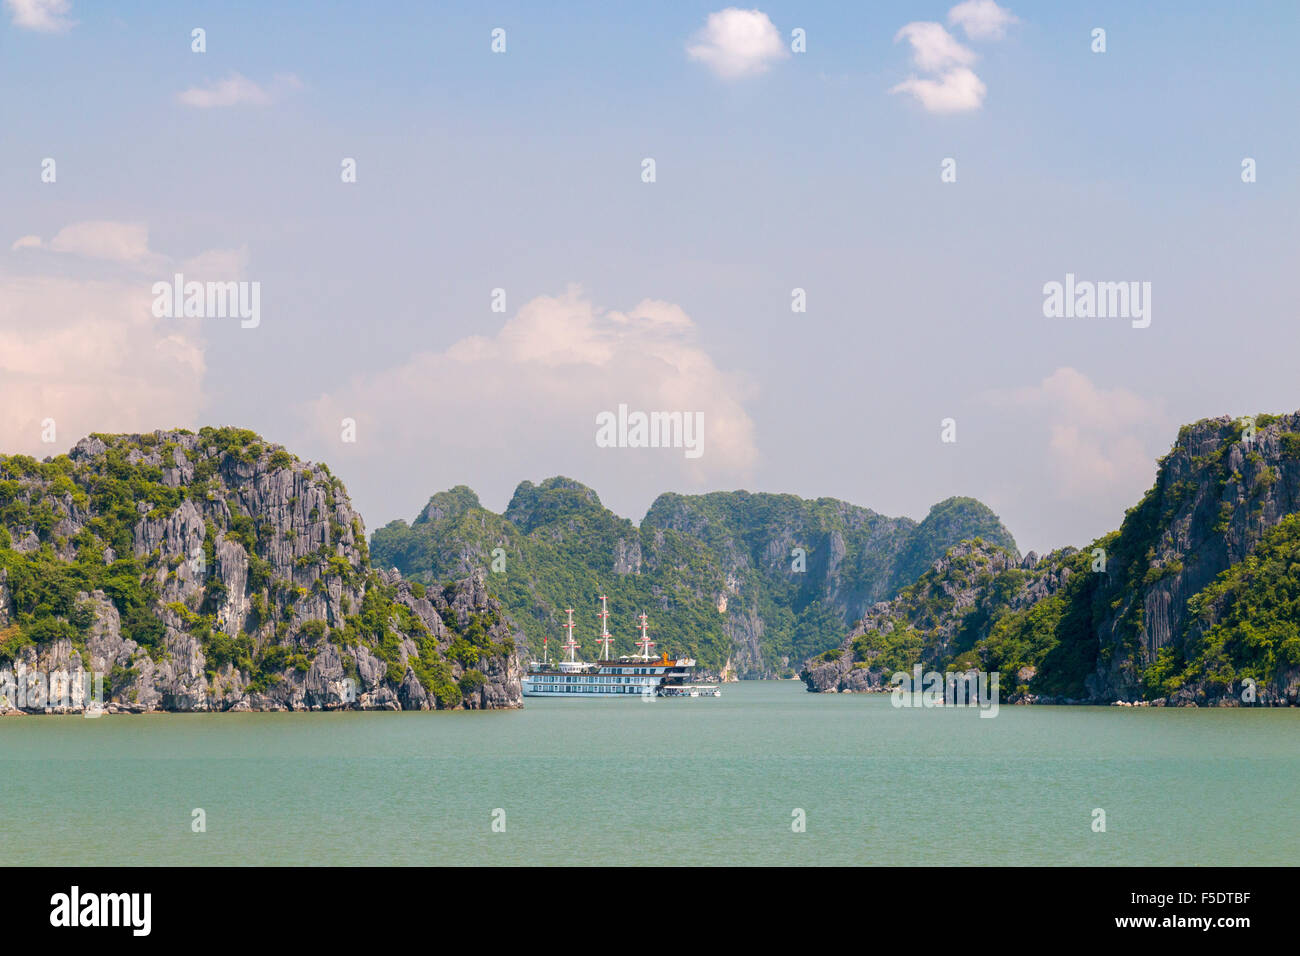 Zone de Bai Tu Long de la Baie d'Halong, dans le nord-est du Vietnam, avec de belles îles calcaires et des eaux tranquilles, Vietnam Banque D'Images